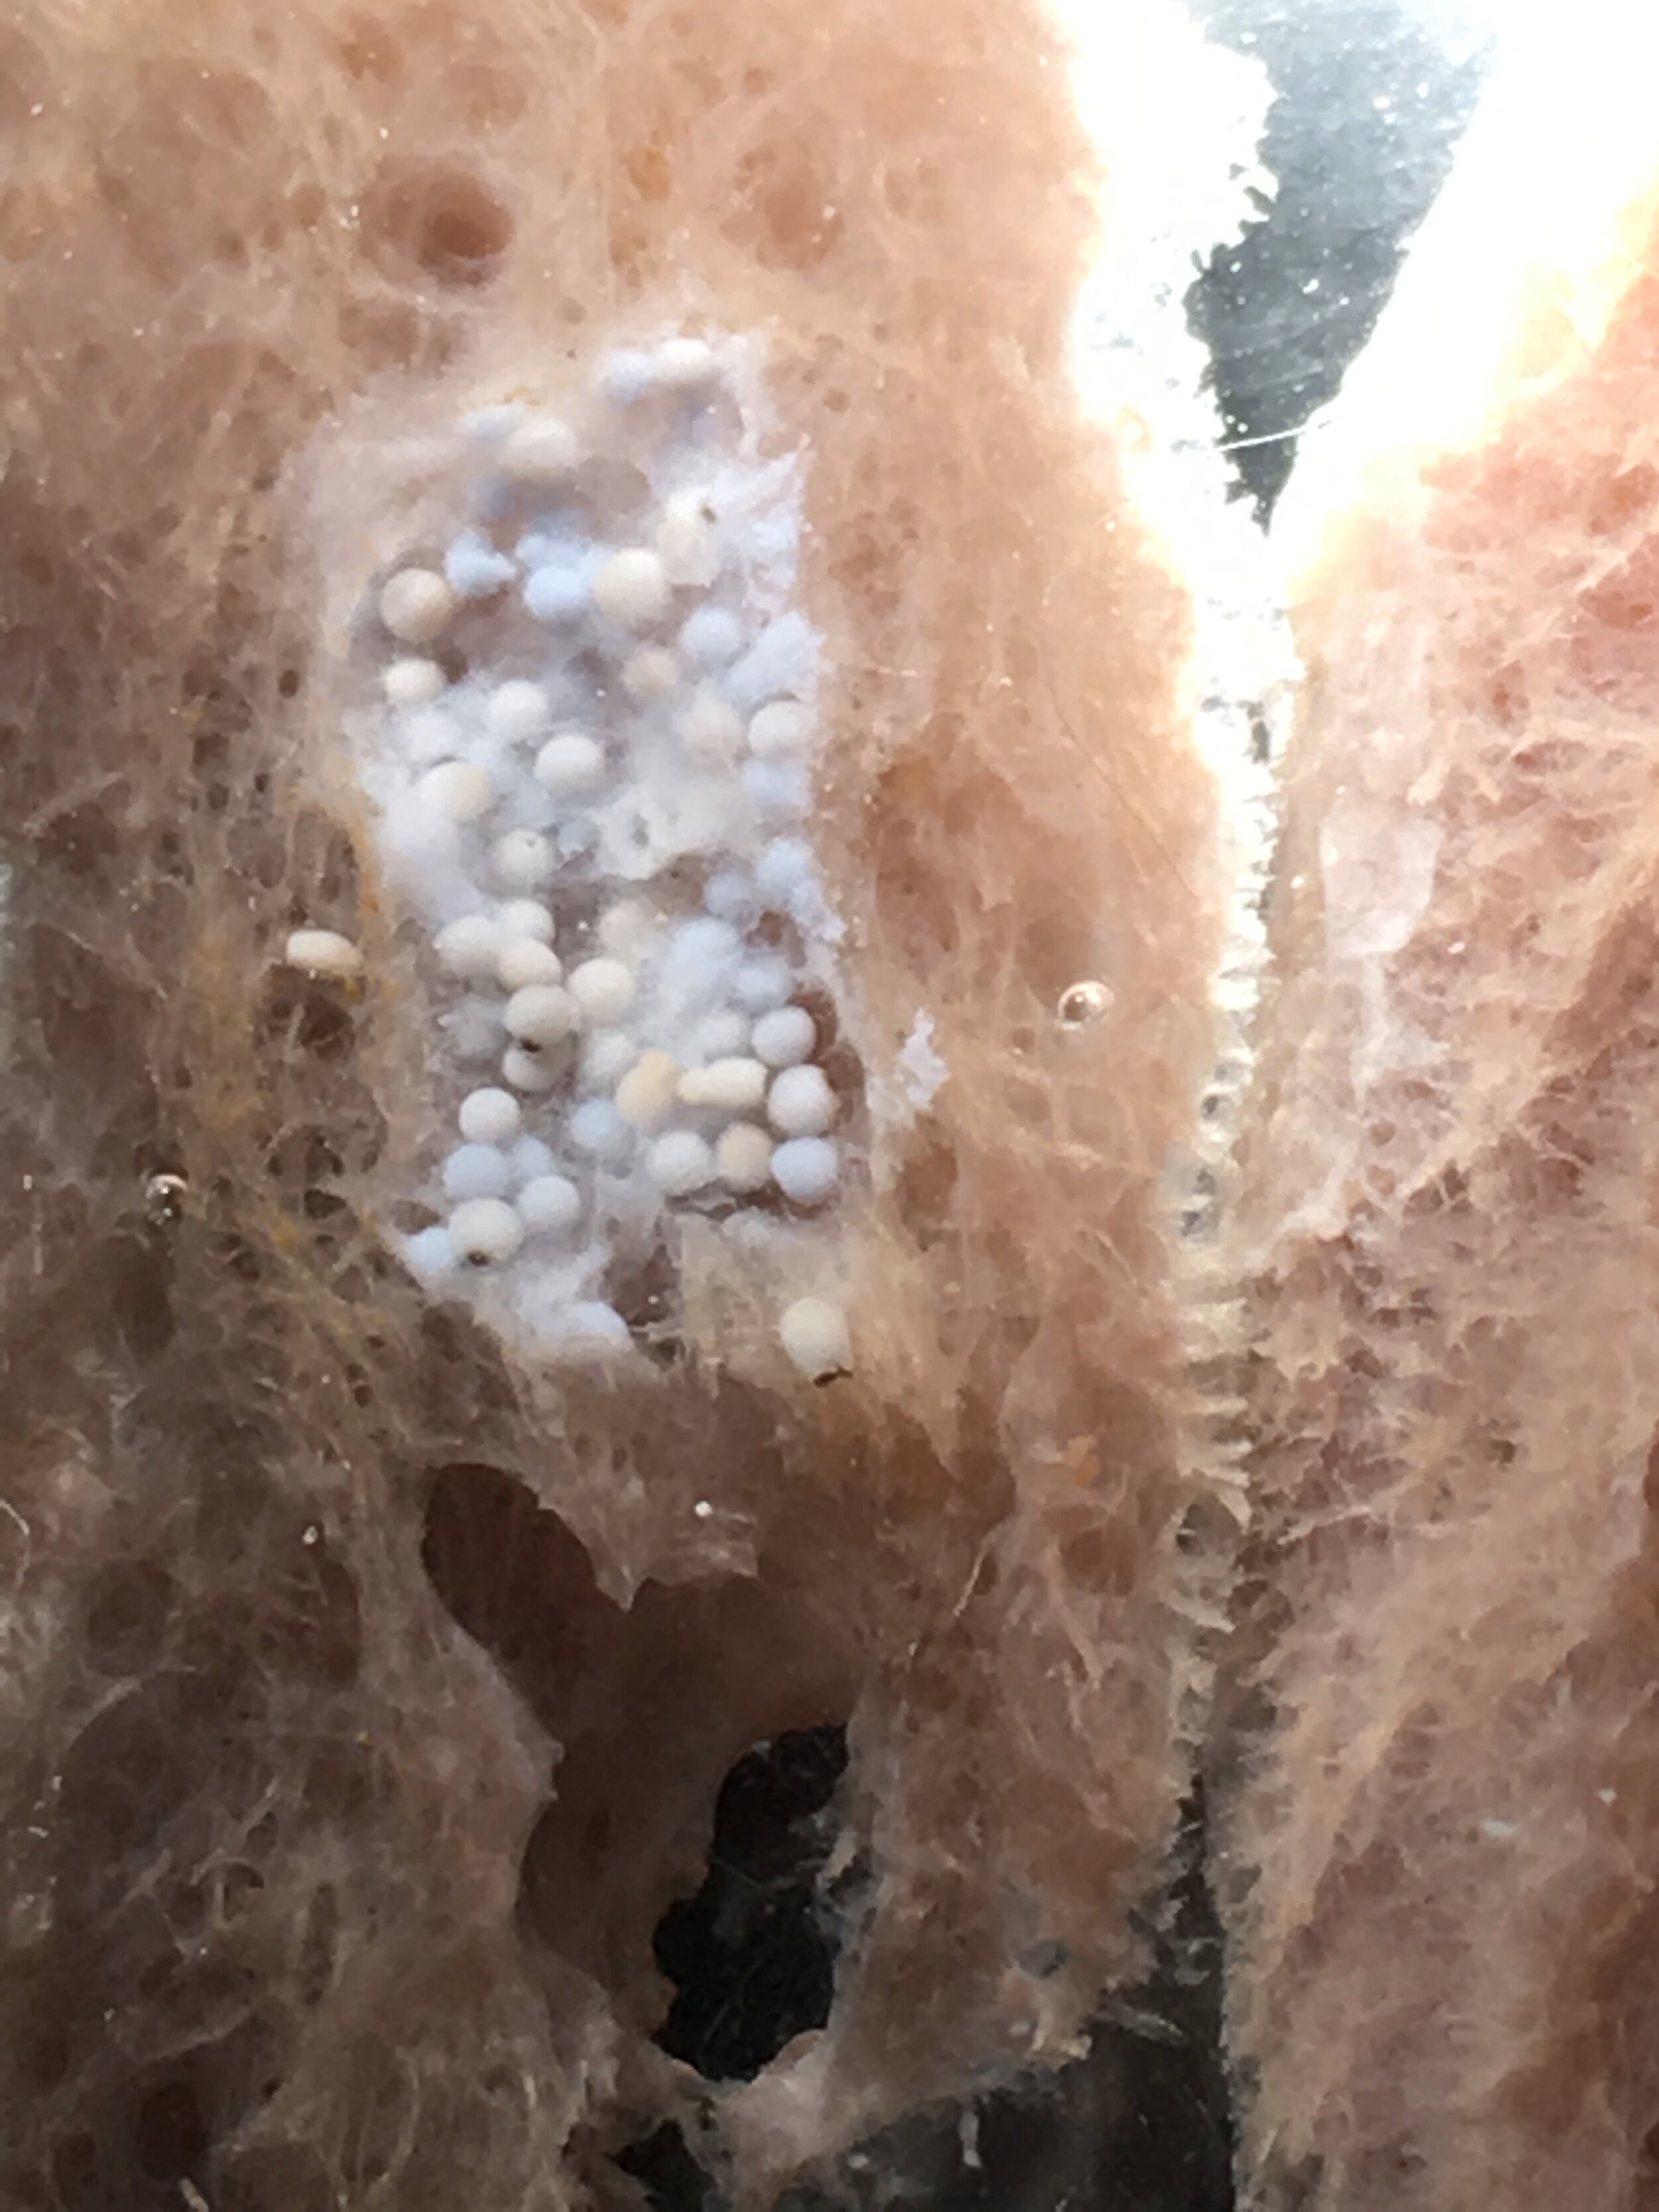  Larvae embedded in sponge tissue 